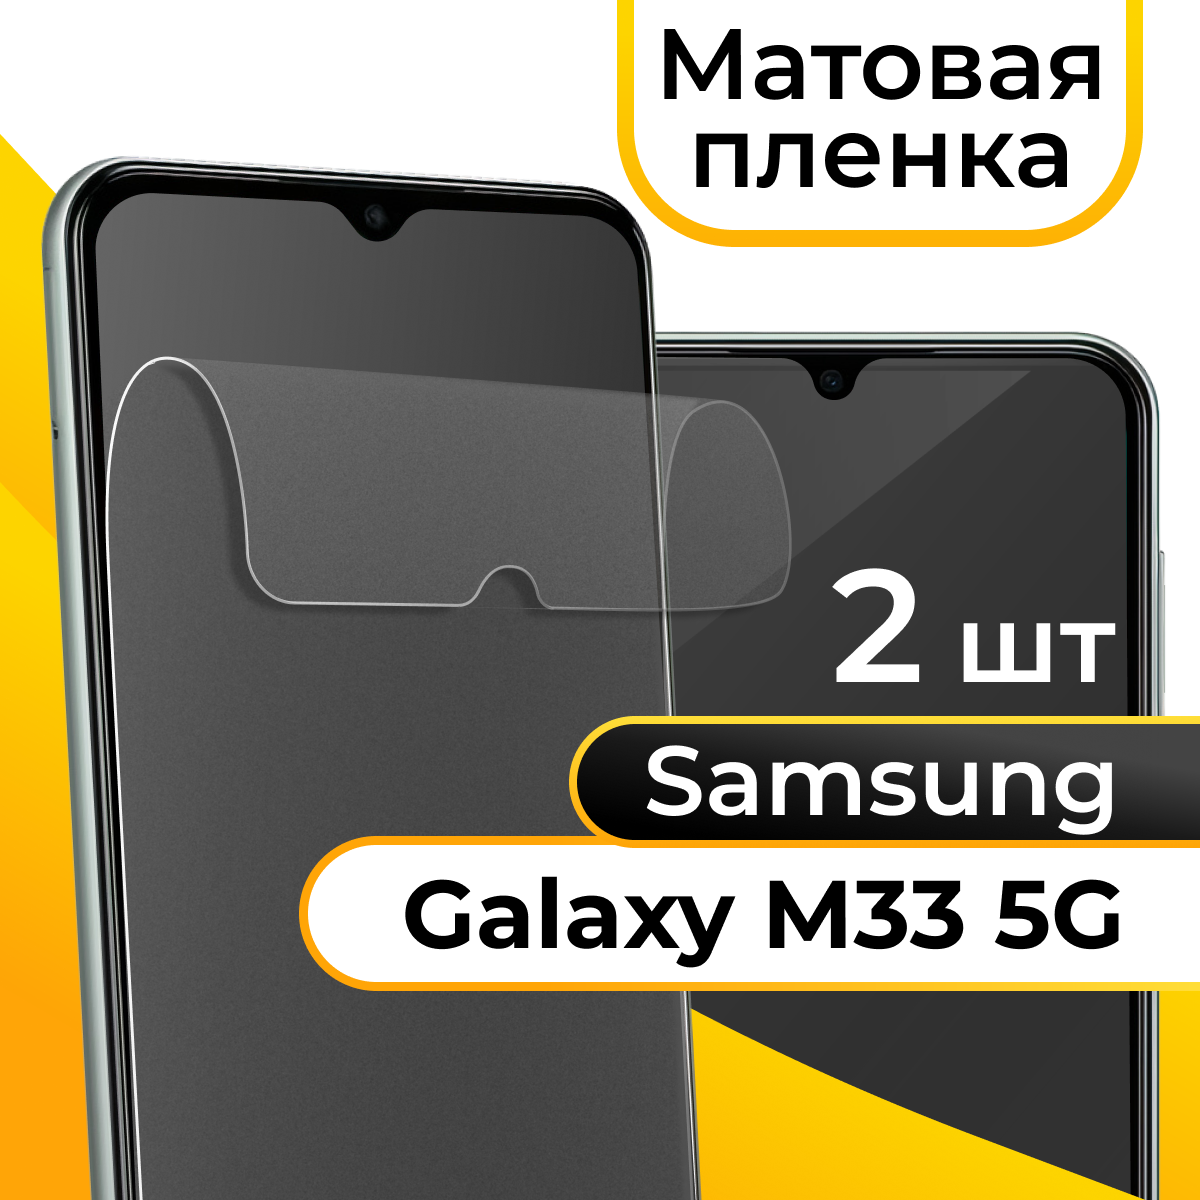 Комплект 2 шт. Матовая пленка для смартфона Samsung Galaxy M33 5G / Защитная противоударная пленка на телефон Самсунг Галакси М33 5Г / Гидрогелевая пленка